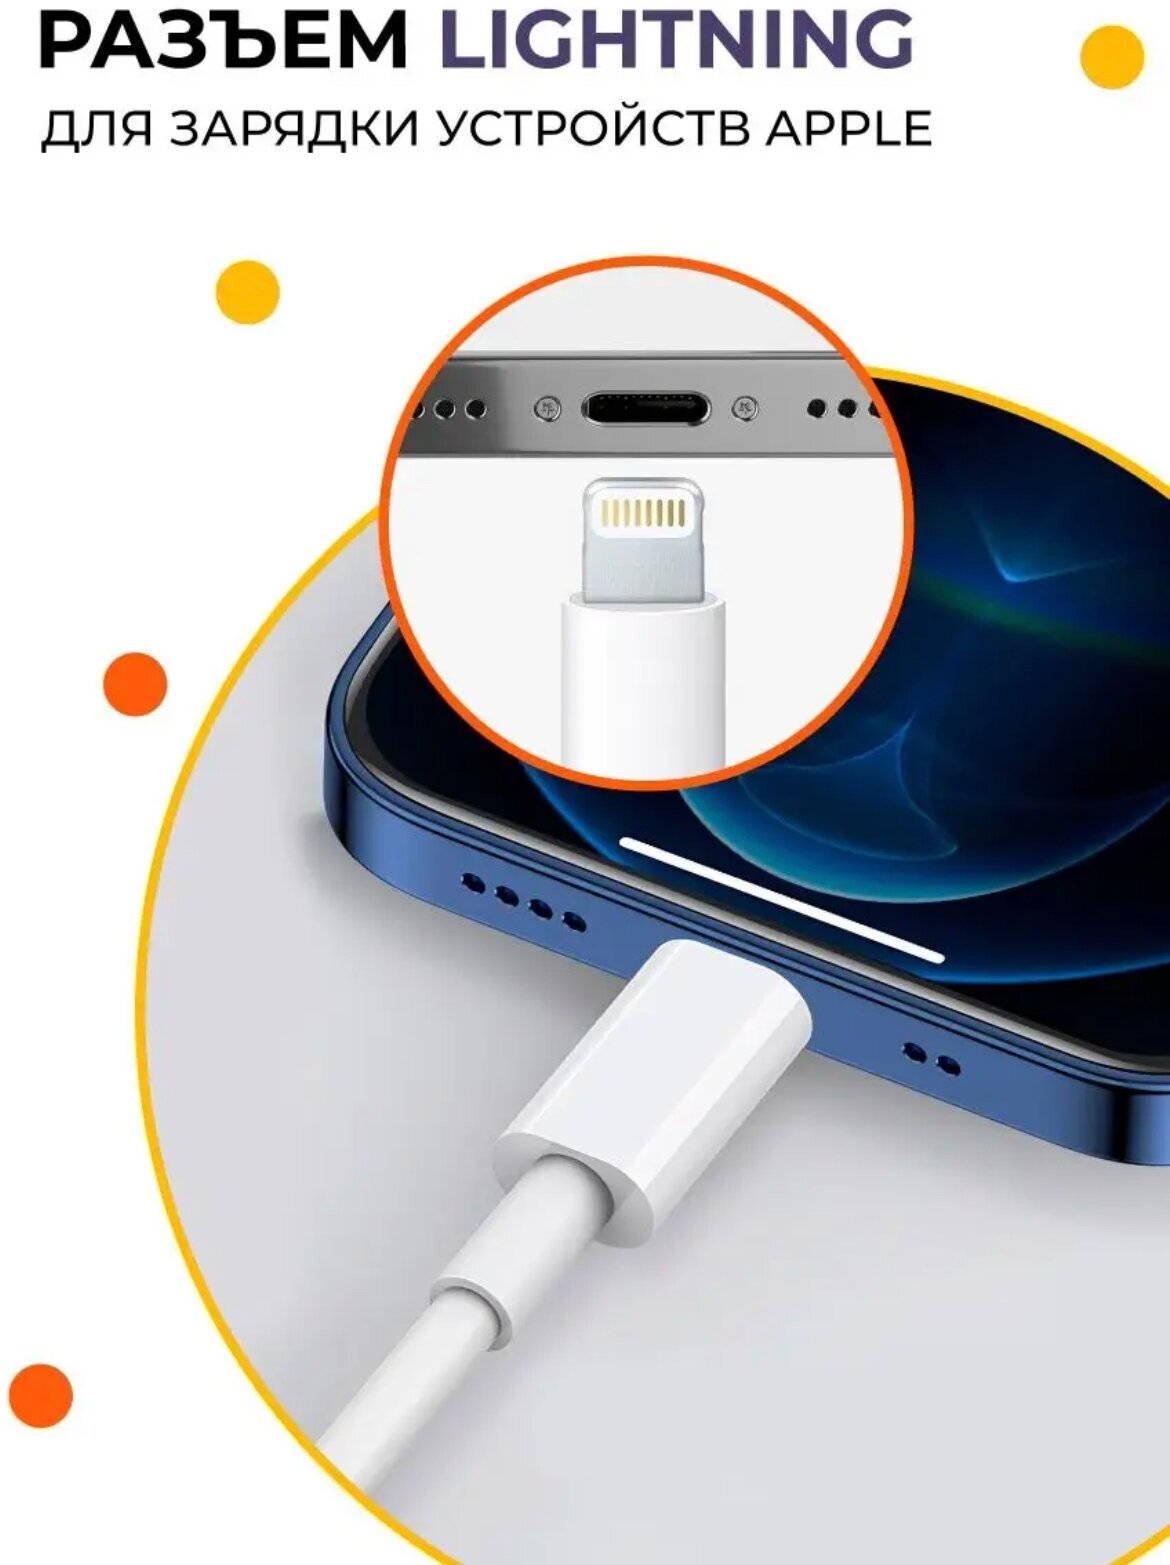 Кабель зарядки (1м) USB Lightning (8 pin) для зарядки Apple iPhone / Совместимость: Apple iPhone, iPod, iPad, наушники AirPod